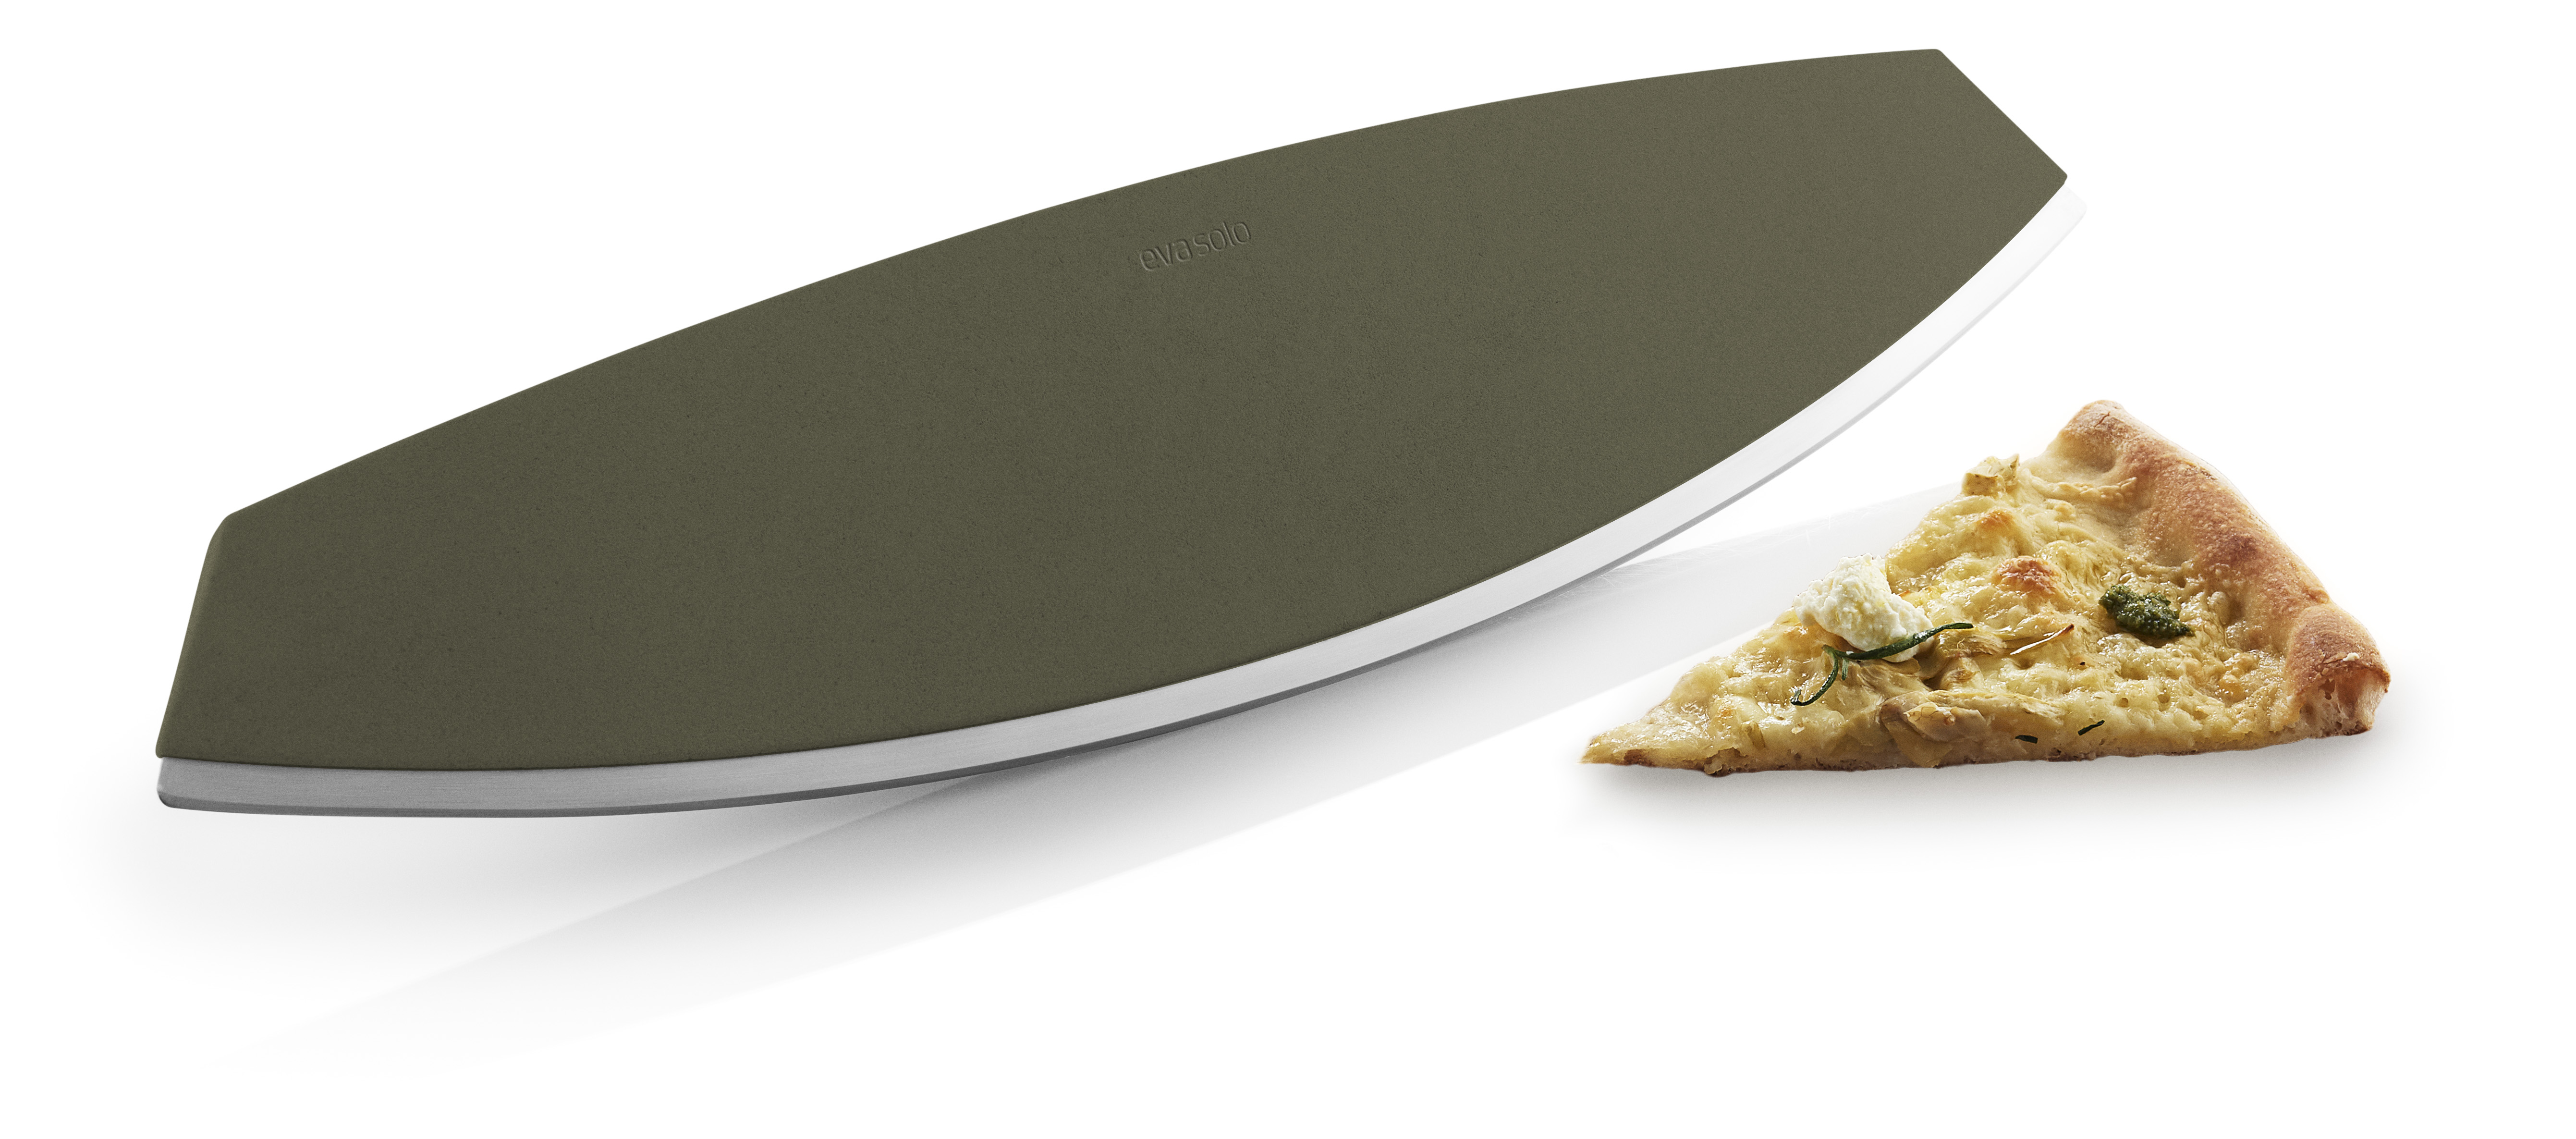 EVA SOLO Green Tool 37 cm - Stahl Pizza- / Kruterschneidemesser